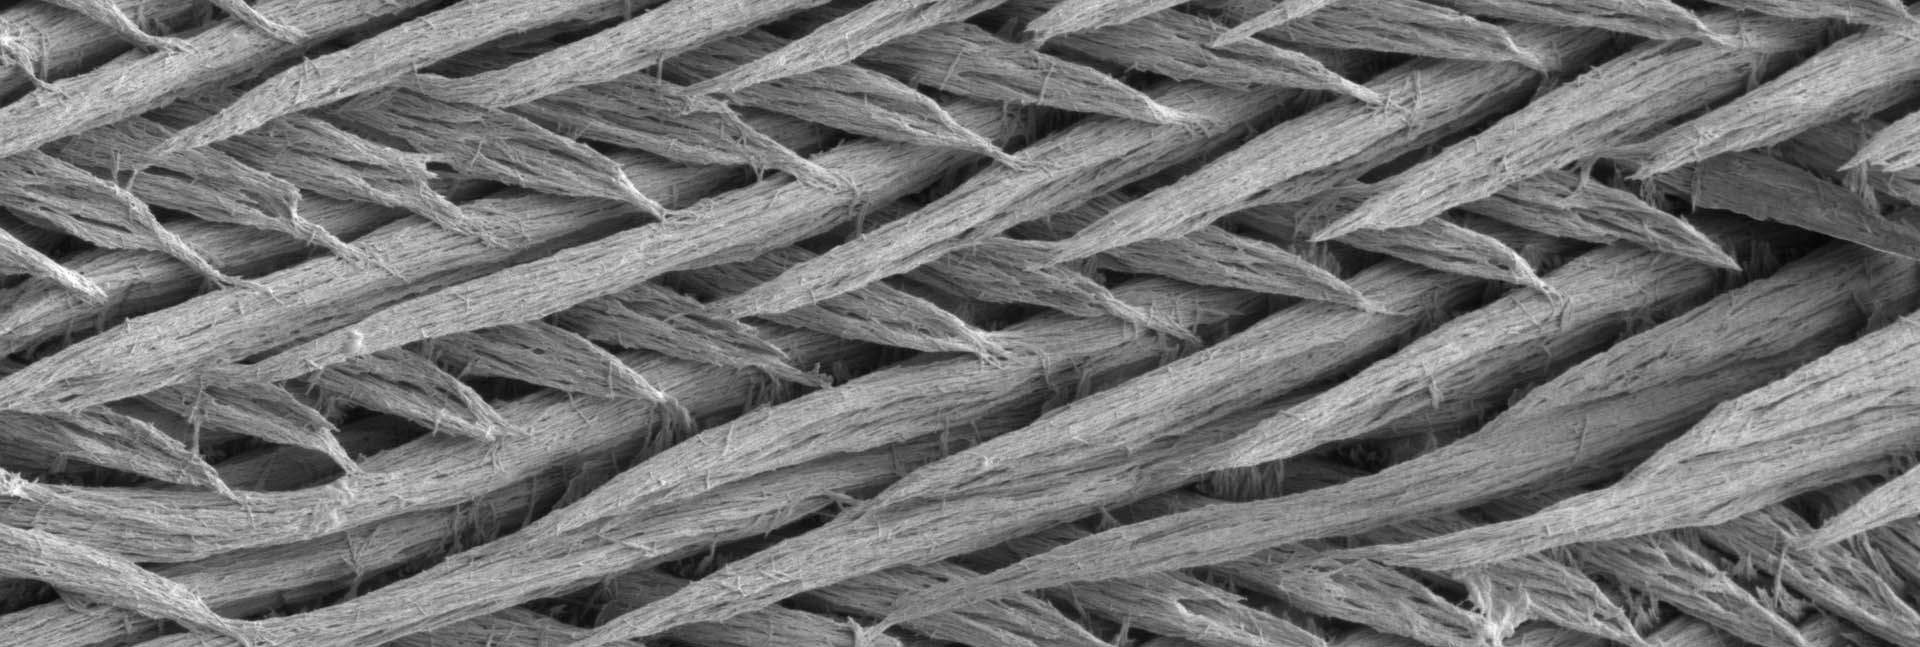 תמונות מיקרוסקופ אלקטרונים של שכבת האמייל העוטפת שיני עכבר